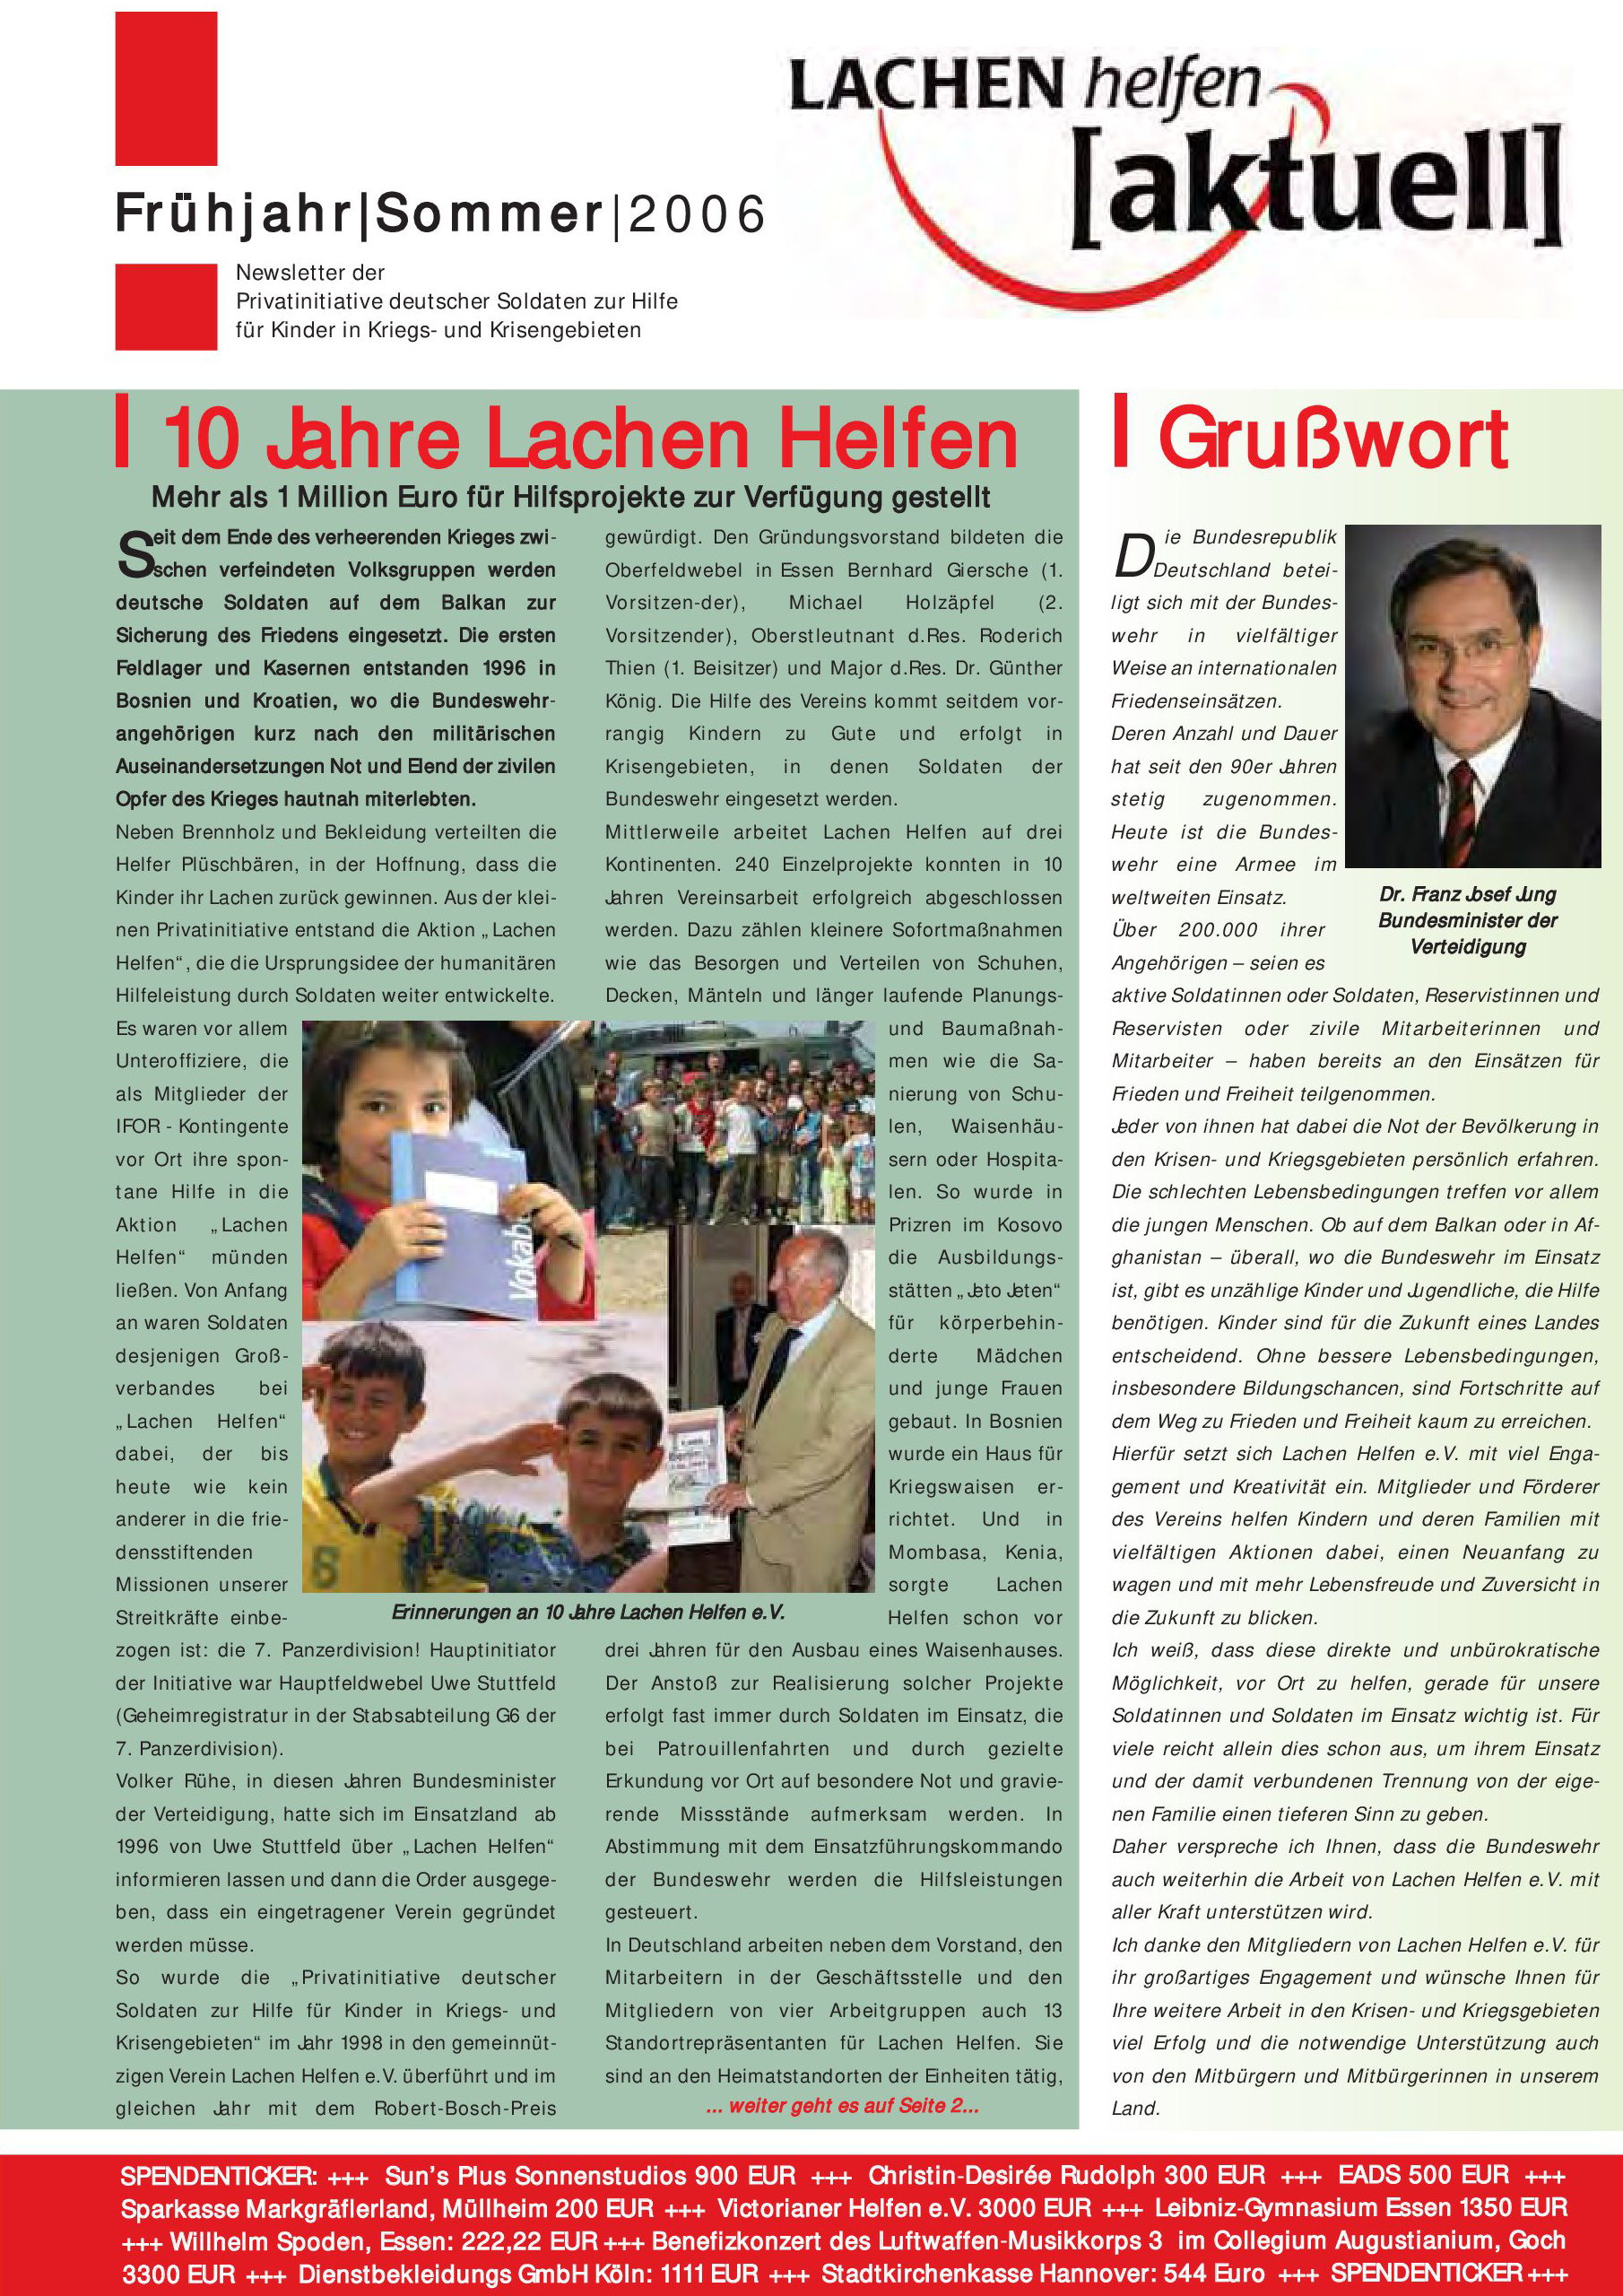 LaHe-Newsletter-2006-Frühjahr-Sommer